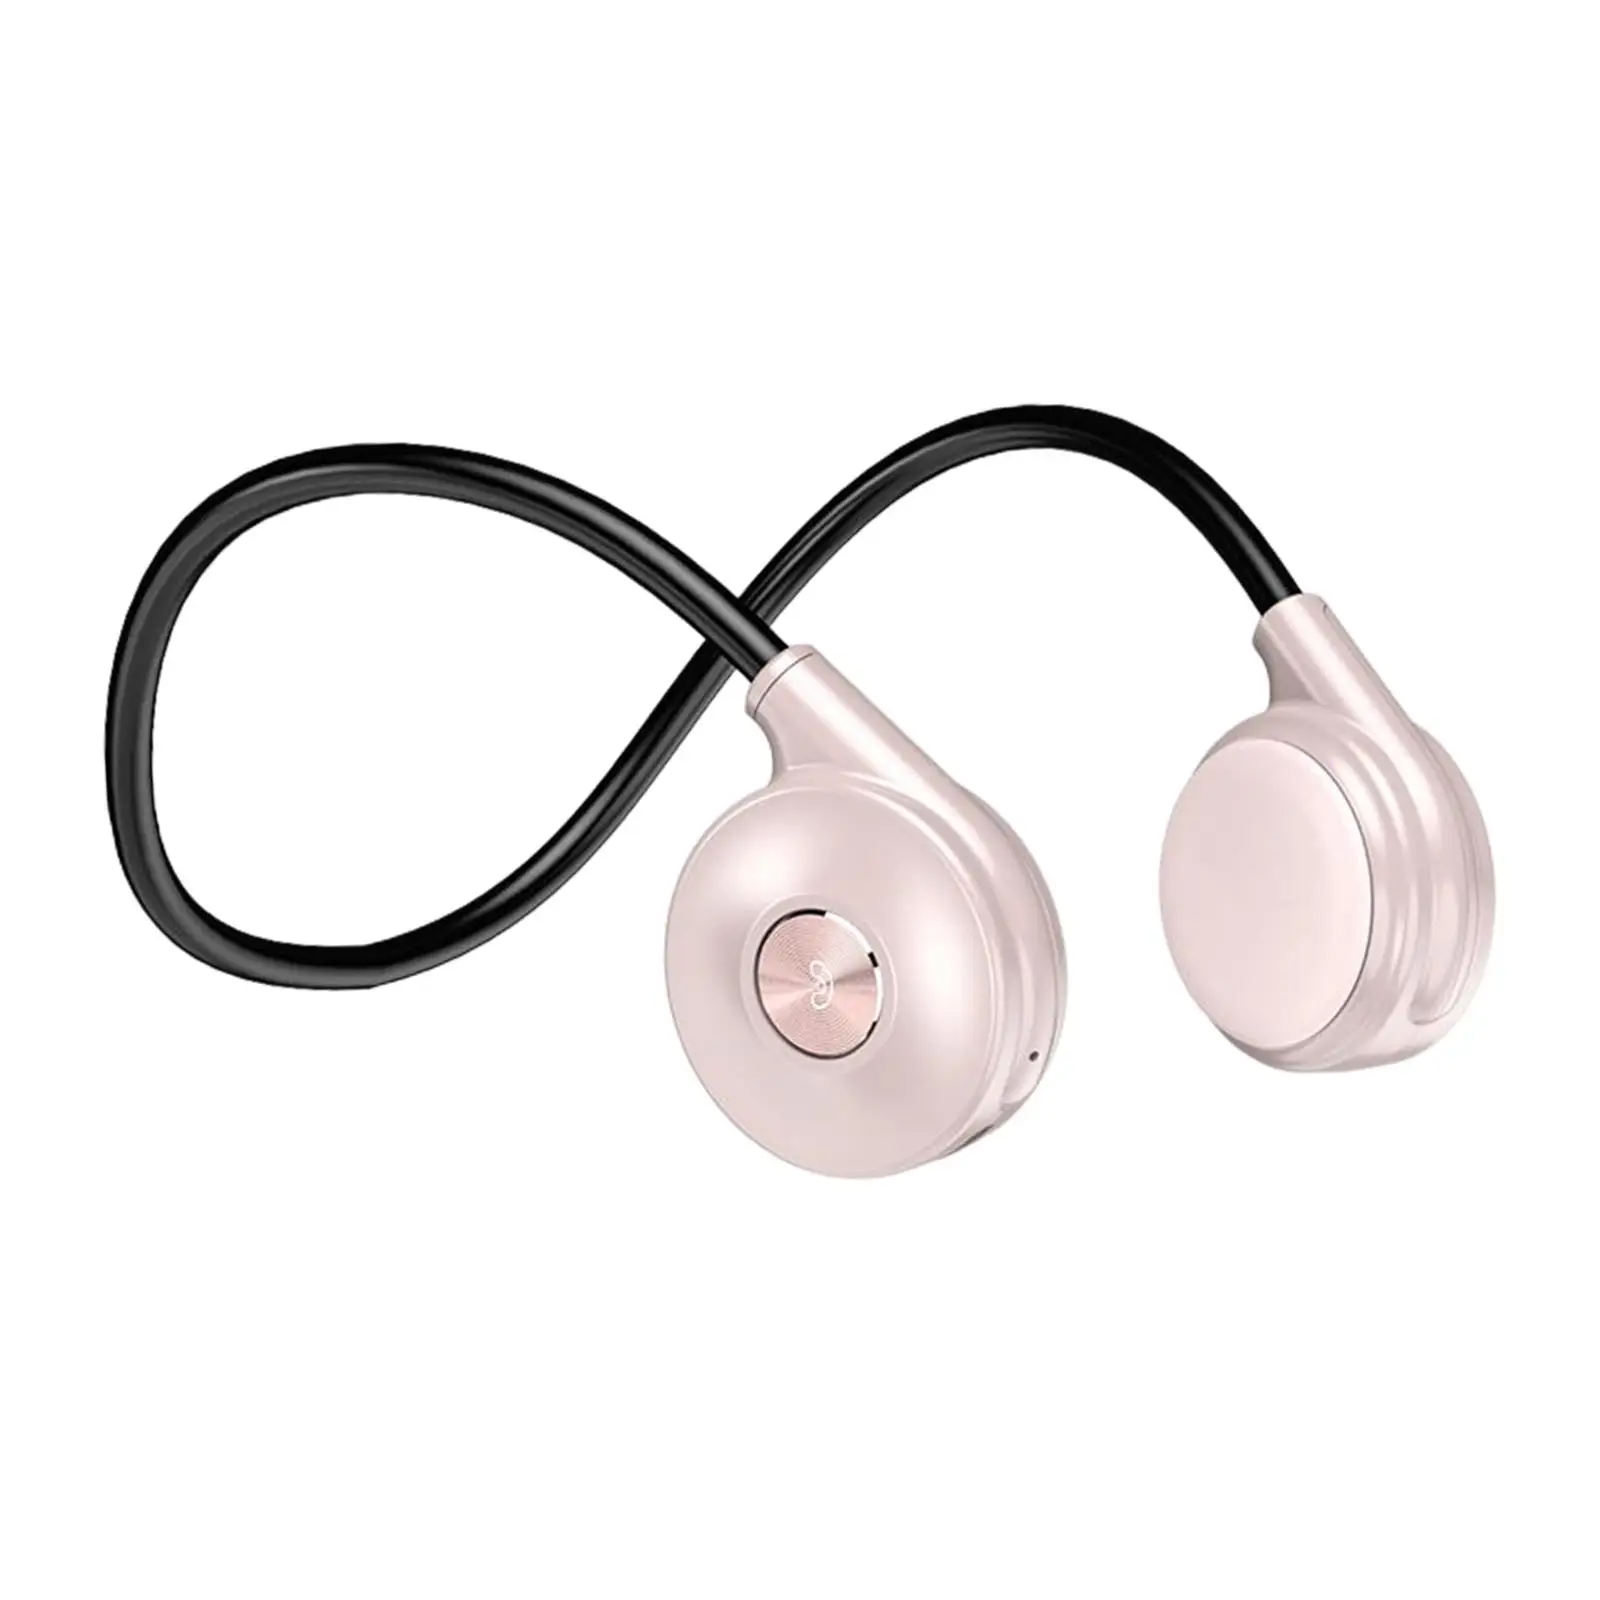 Open Ear Headset IPX5 Waterproof HiFi Sound Sports Earphone for Running Business